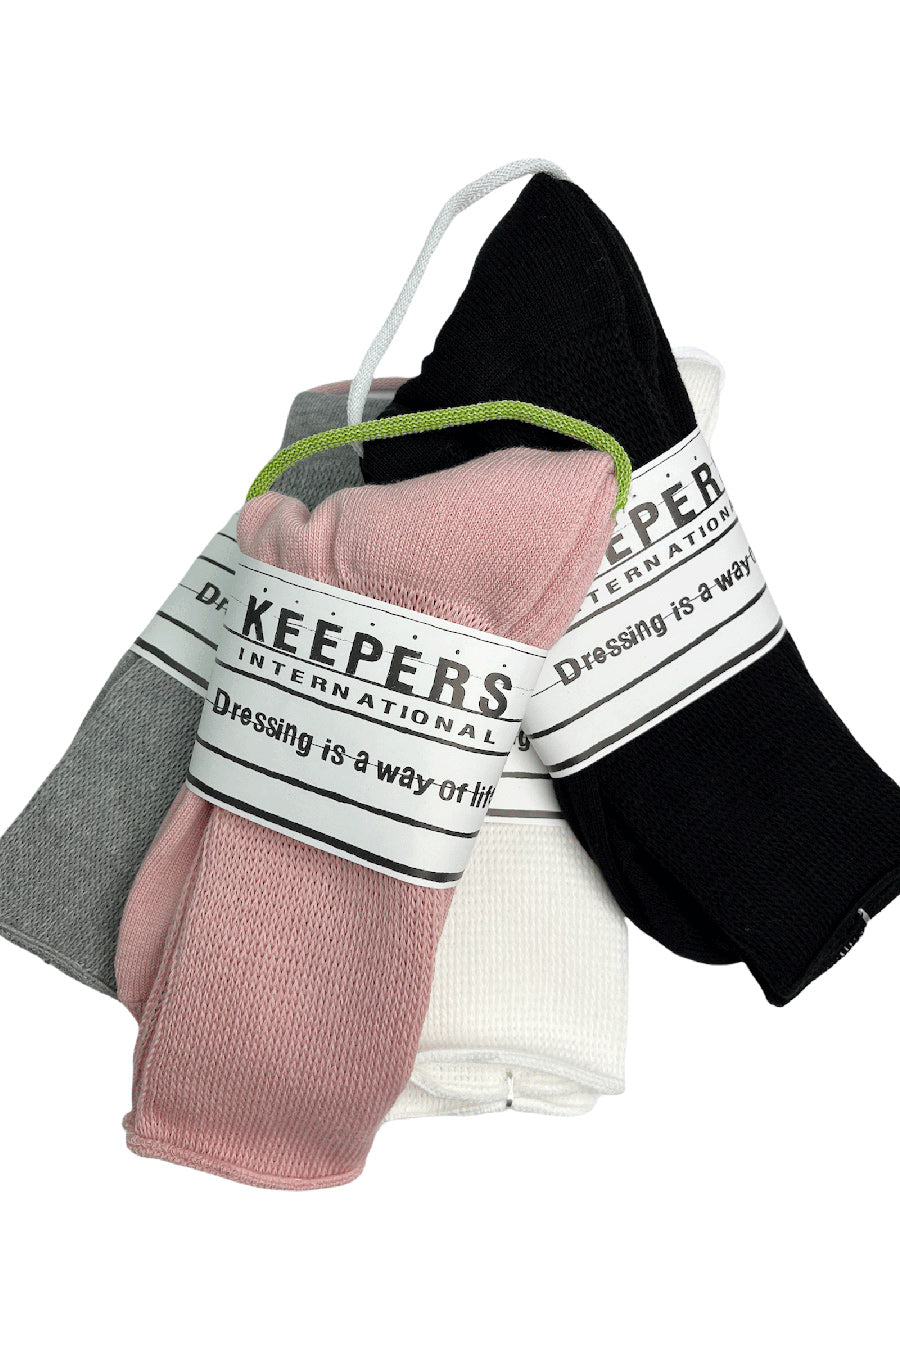 KEEPERS キーパース ノンタイトニングソックス 靴下 ソックス SOCKS 3足組 3P レギュラー丈 糖尿患者 妊婦さん 足むくみ 締め付けない 日本製 メンズ レディース アメカジ キャンプ アウトドア